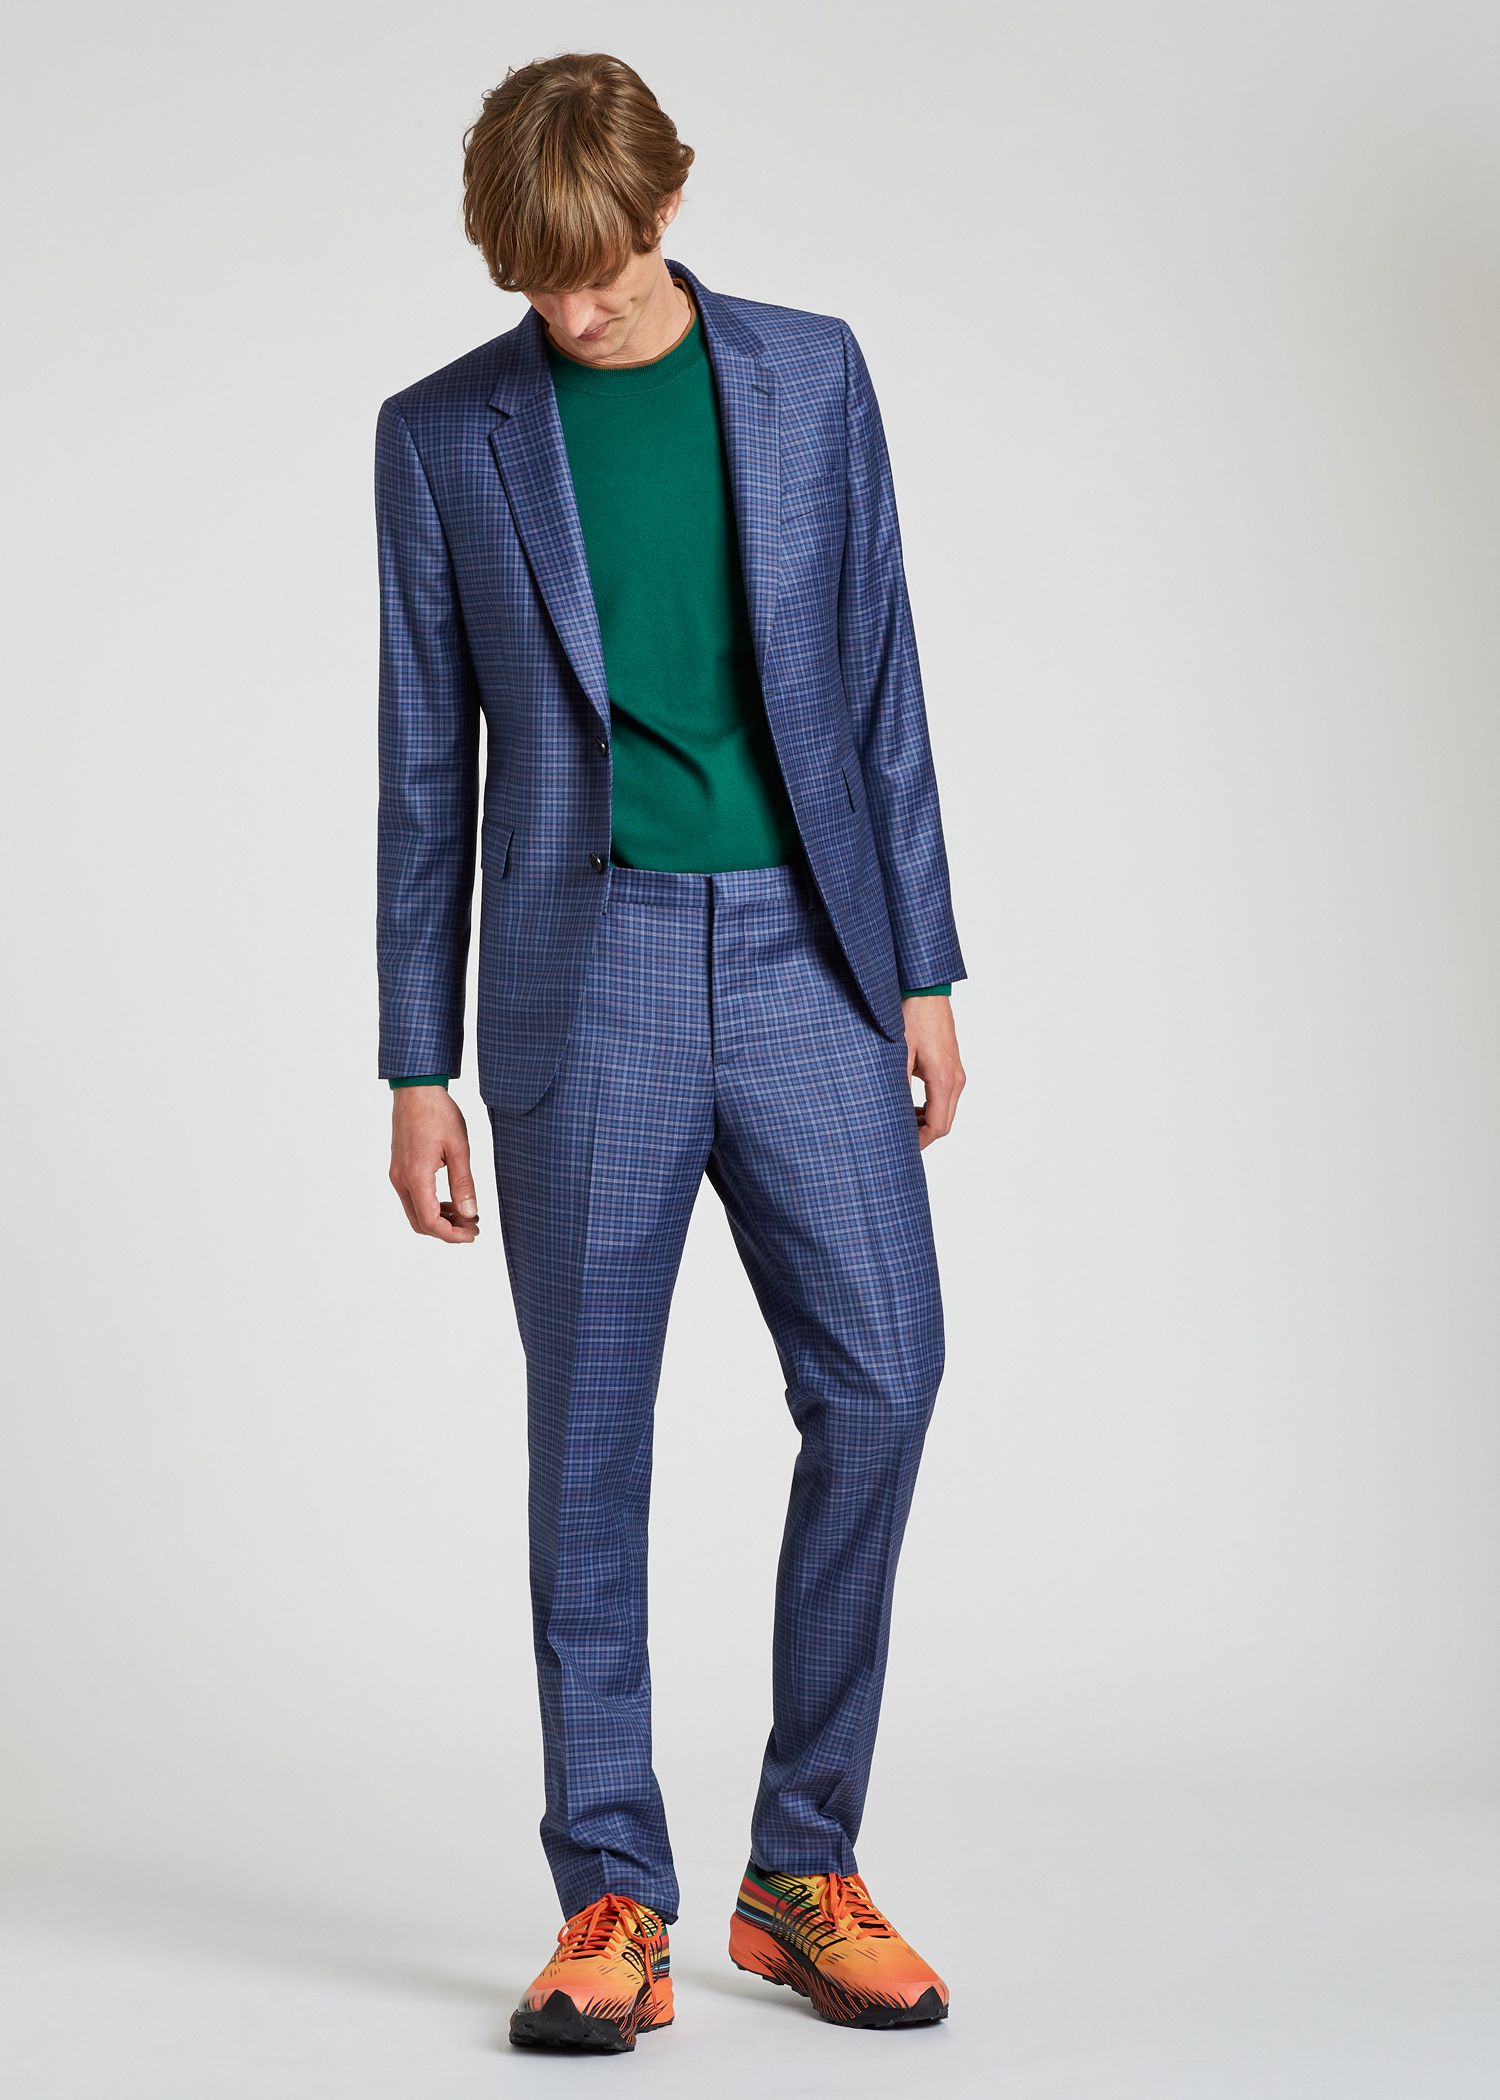 Men's Slim-Fit Light Blue Check Wool Suit - Paul Smith US